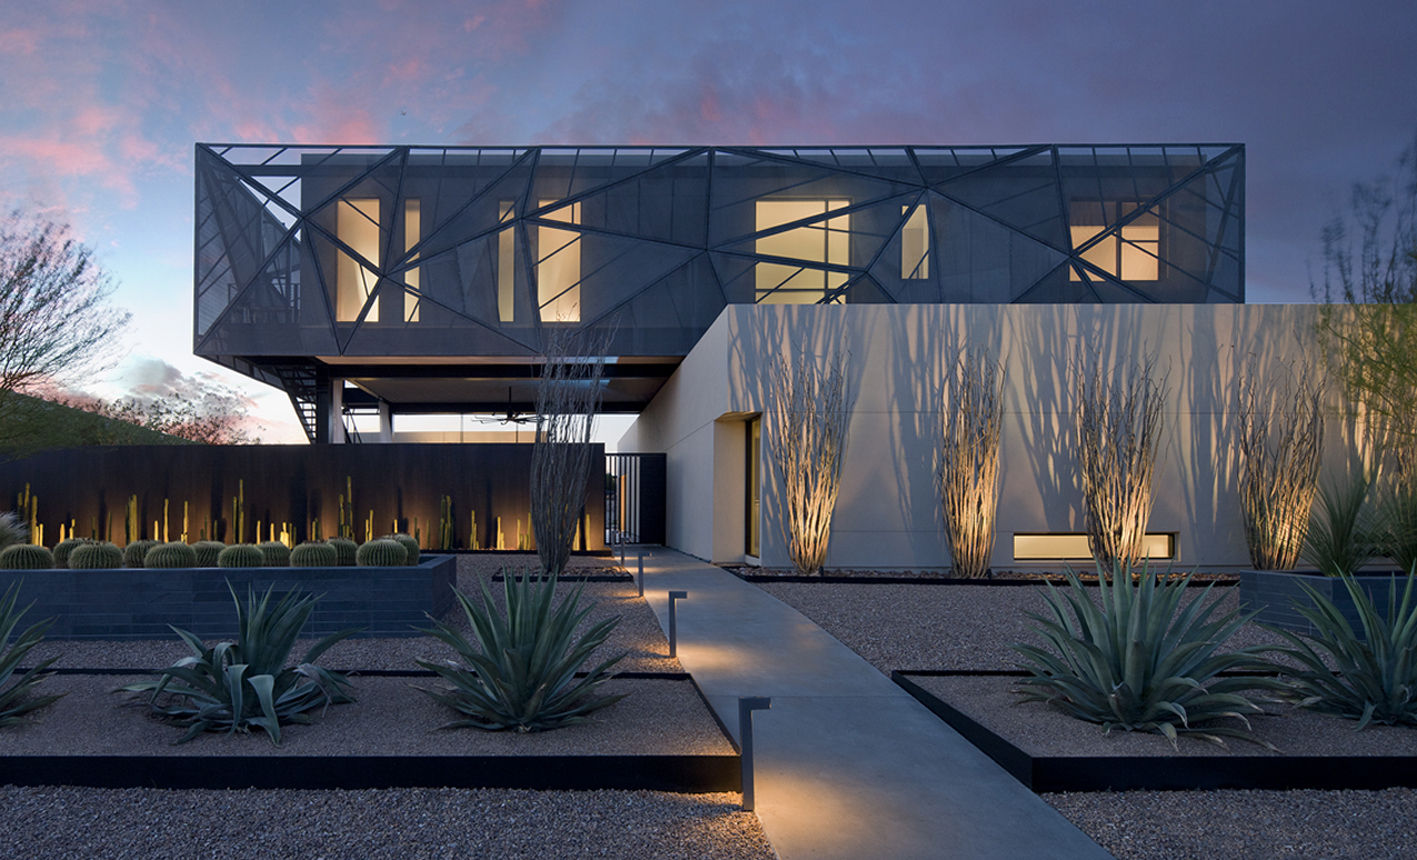 Modern desert house showcased in best exterior house design ideas